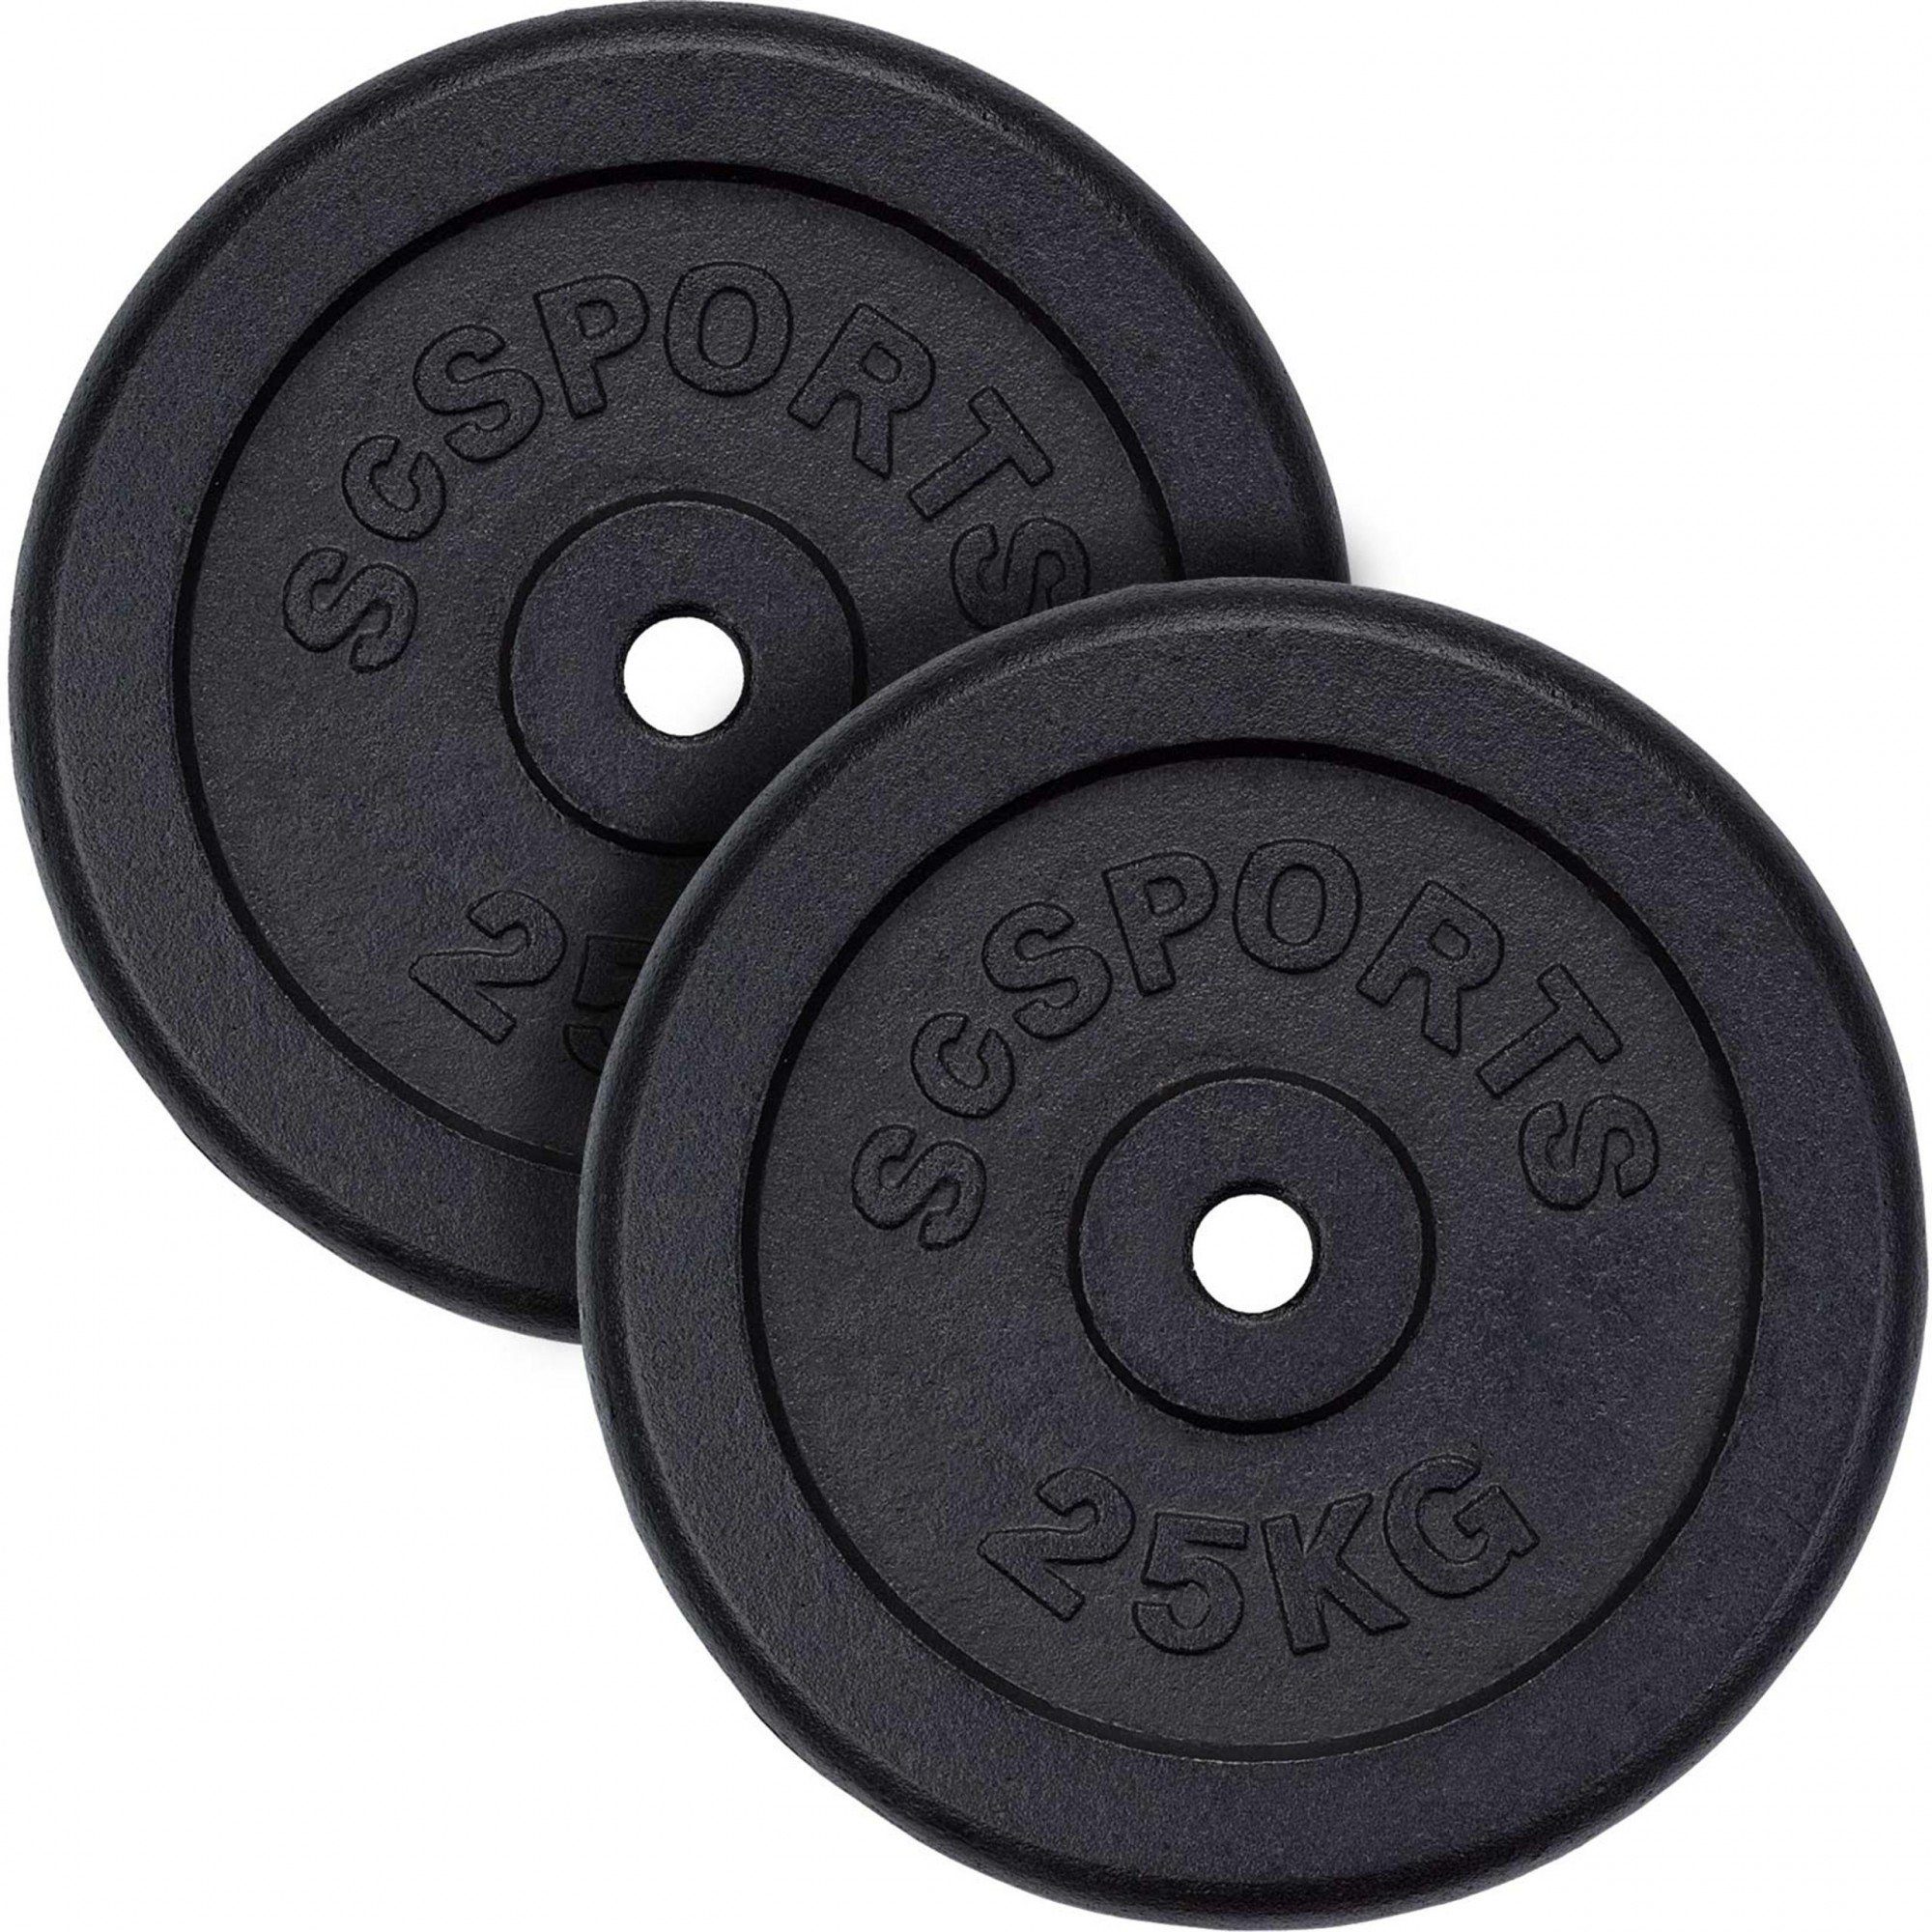 kg (10000102-tlg) Gewichte, 50 Gewichtsscheiben Hantelscheiben 30mm Ø Gusseisen ScSPORTS® Set